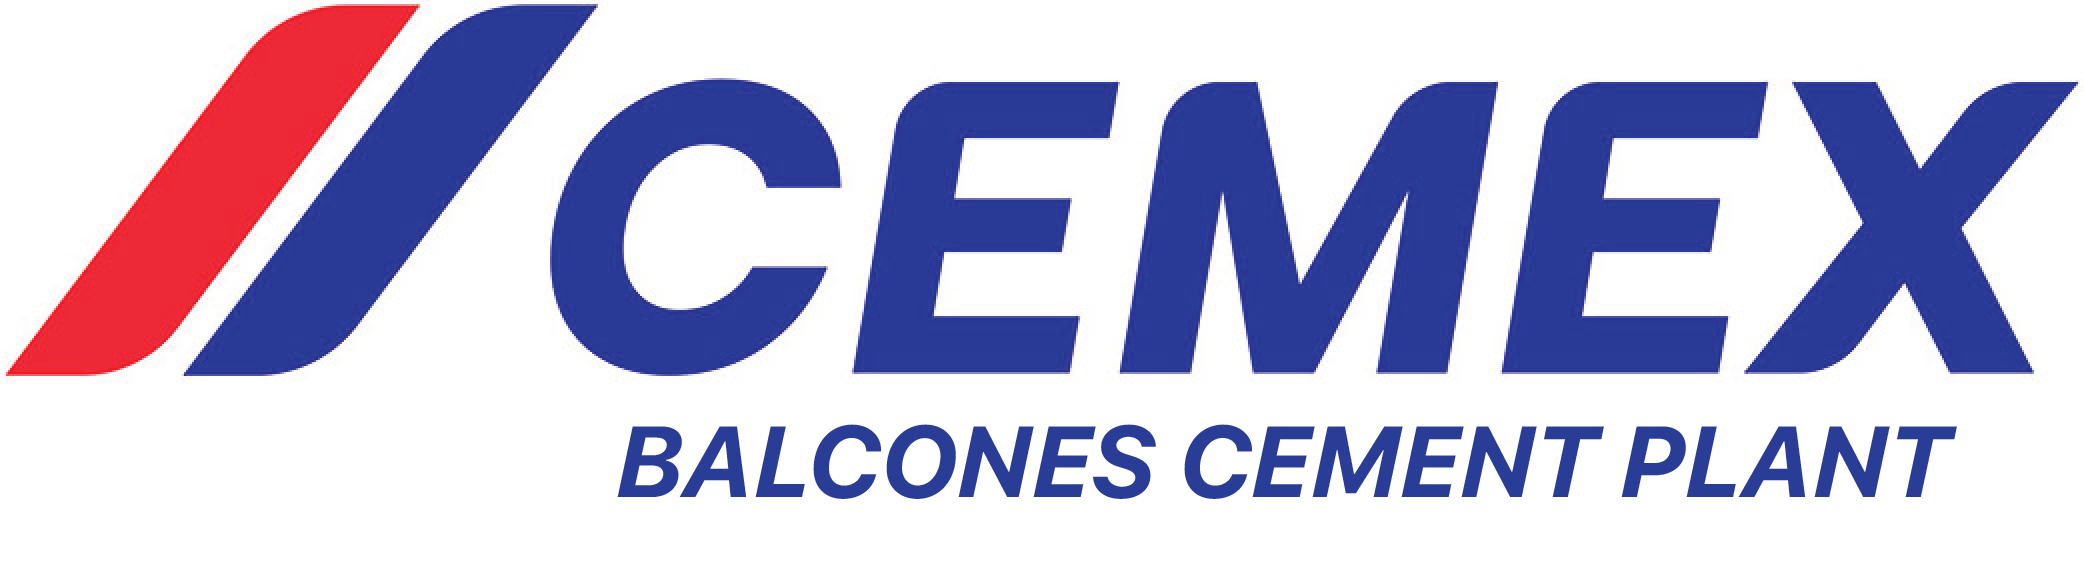 CEMEX Balcones Cement Plant